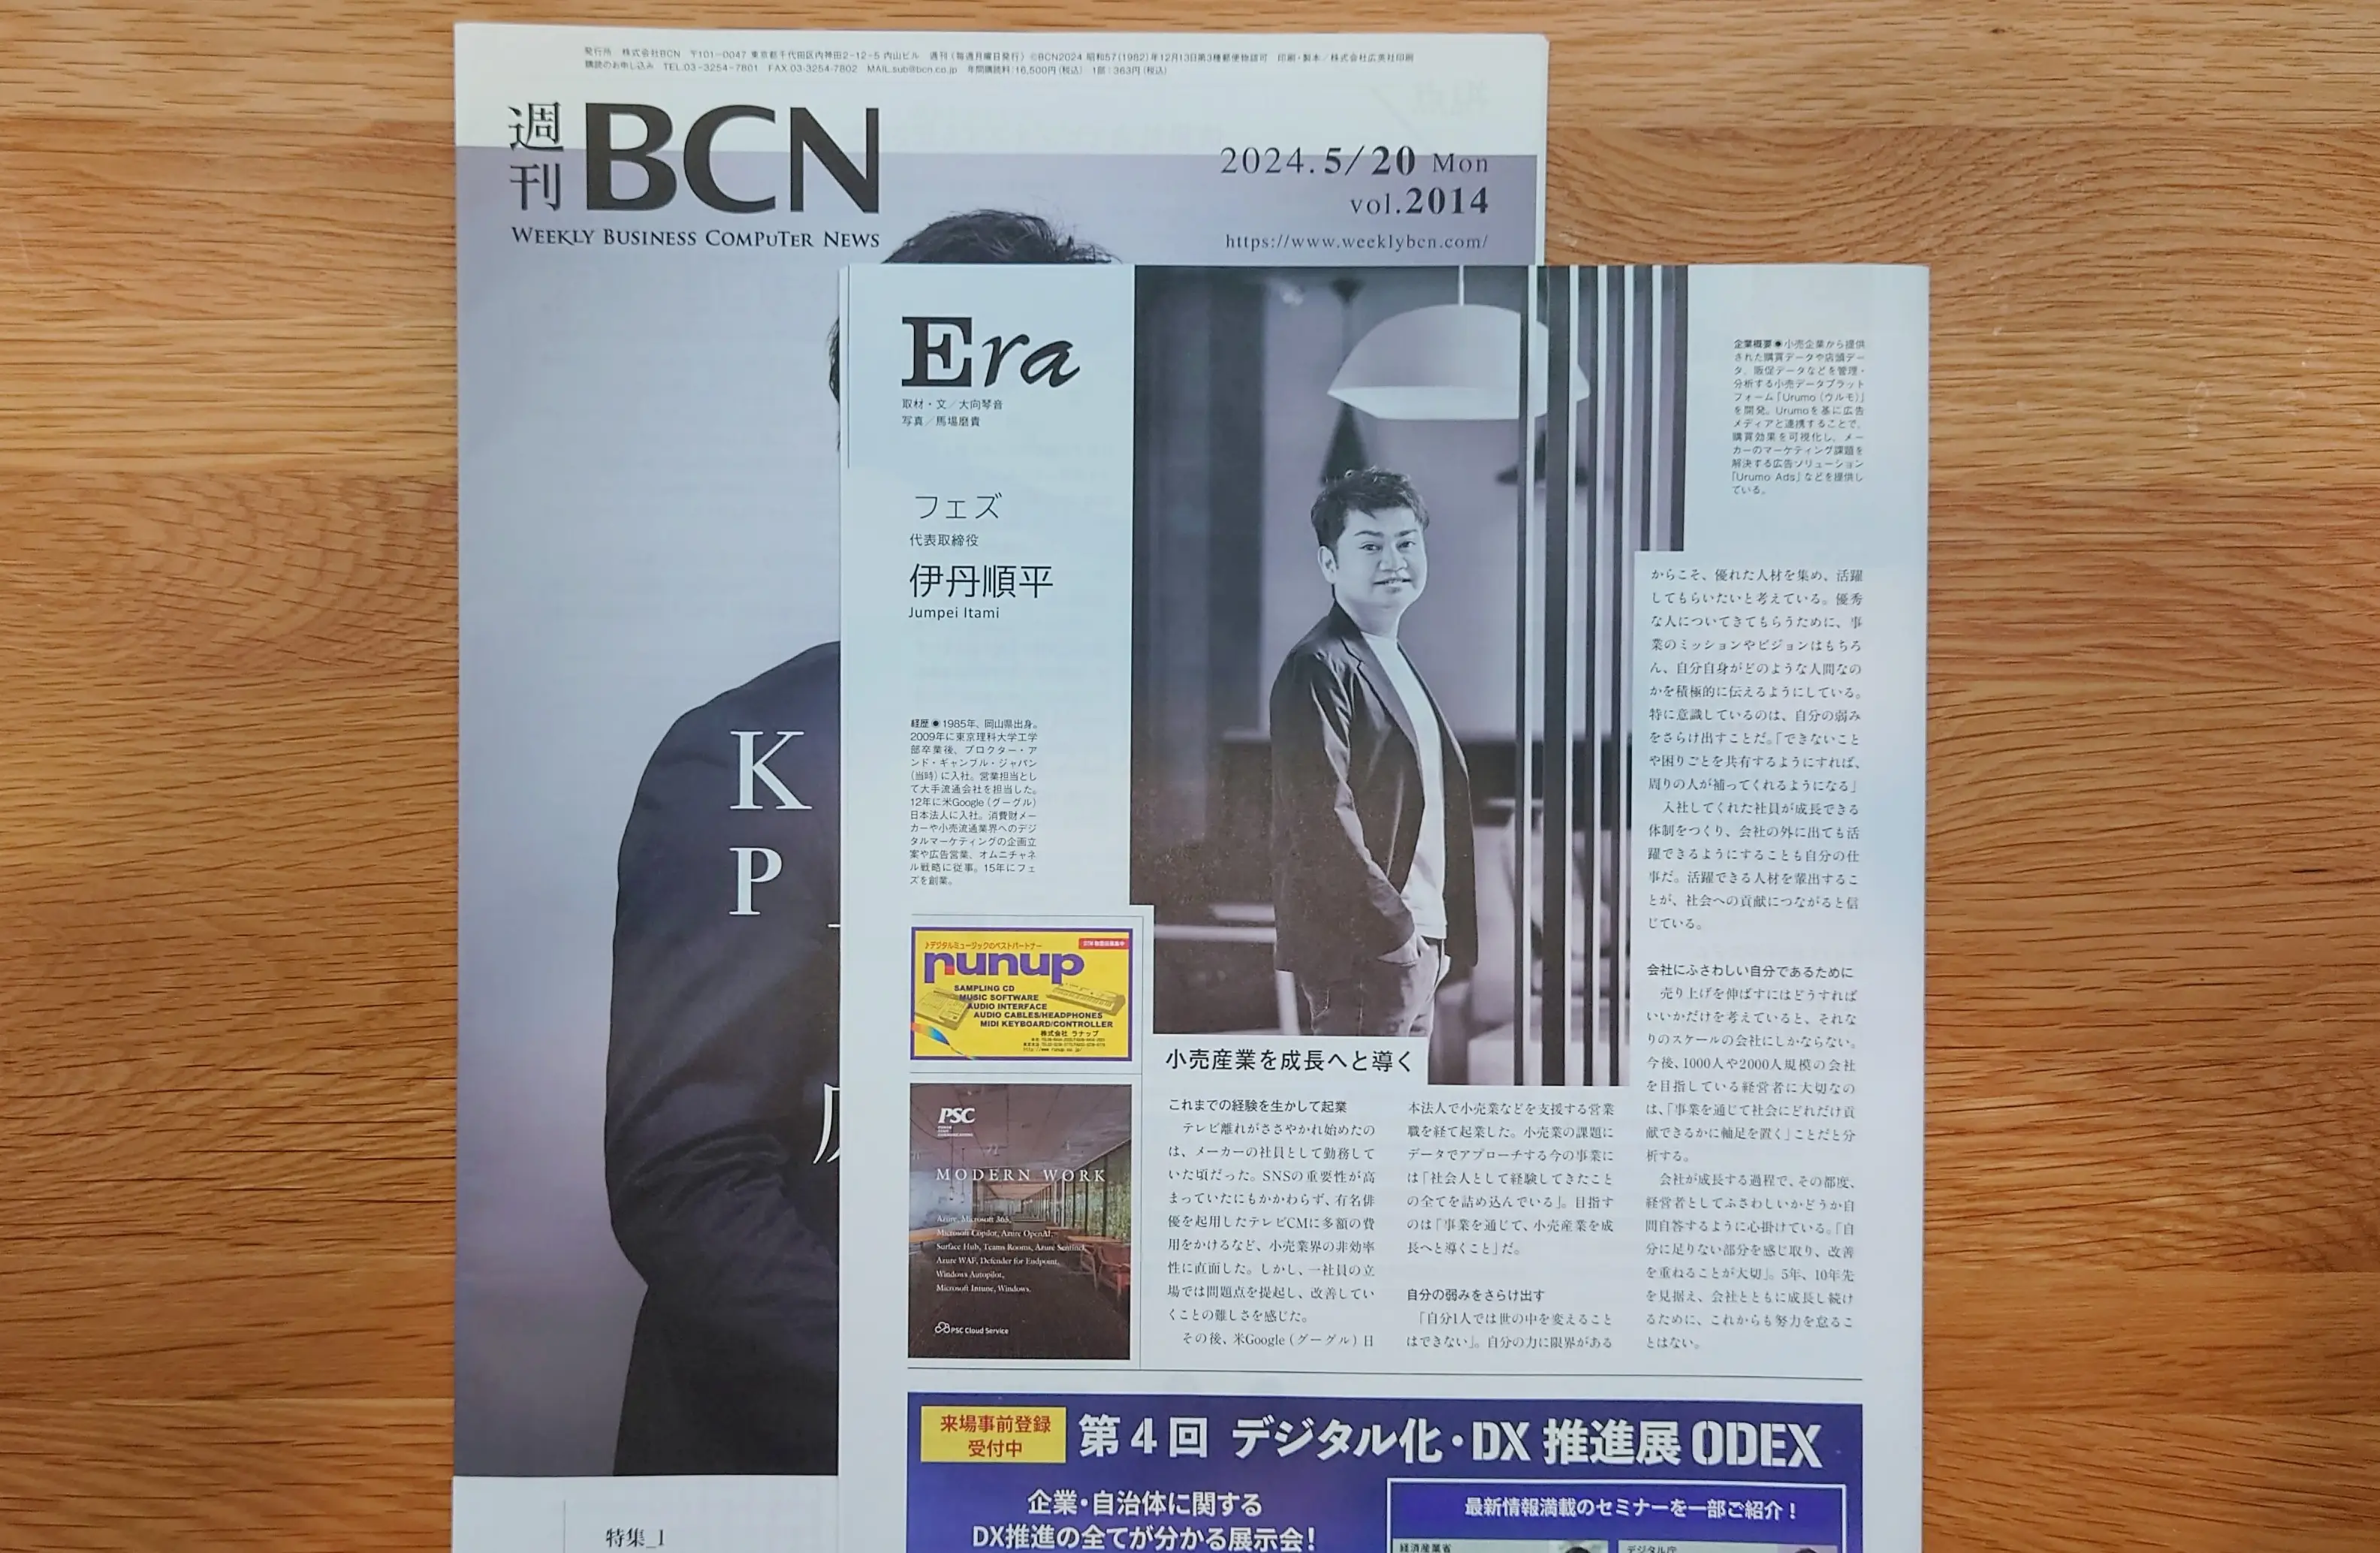 ITビジネス専門紙「週刊BCN」にて、代表 伊丹のインタビュー記事が掲載されました